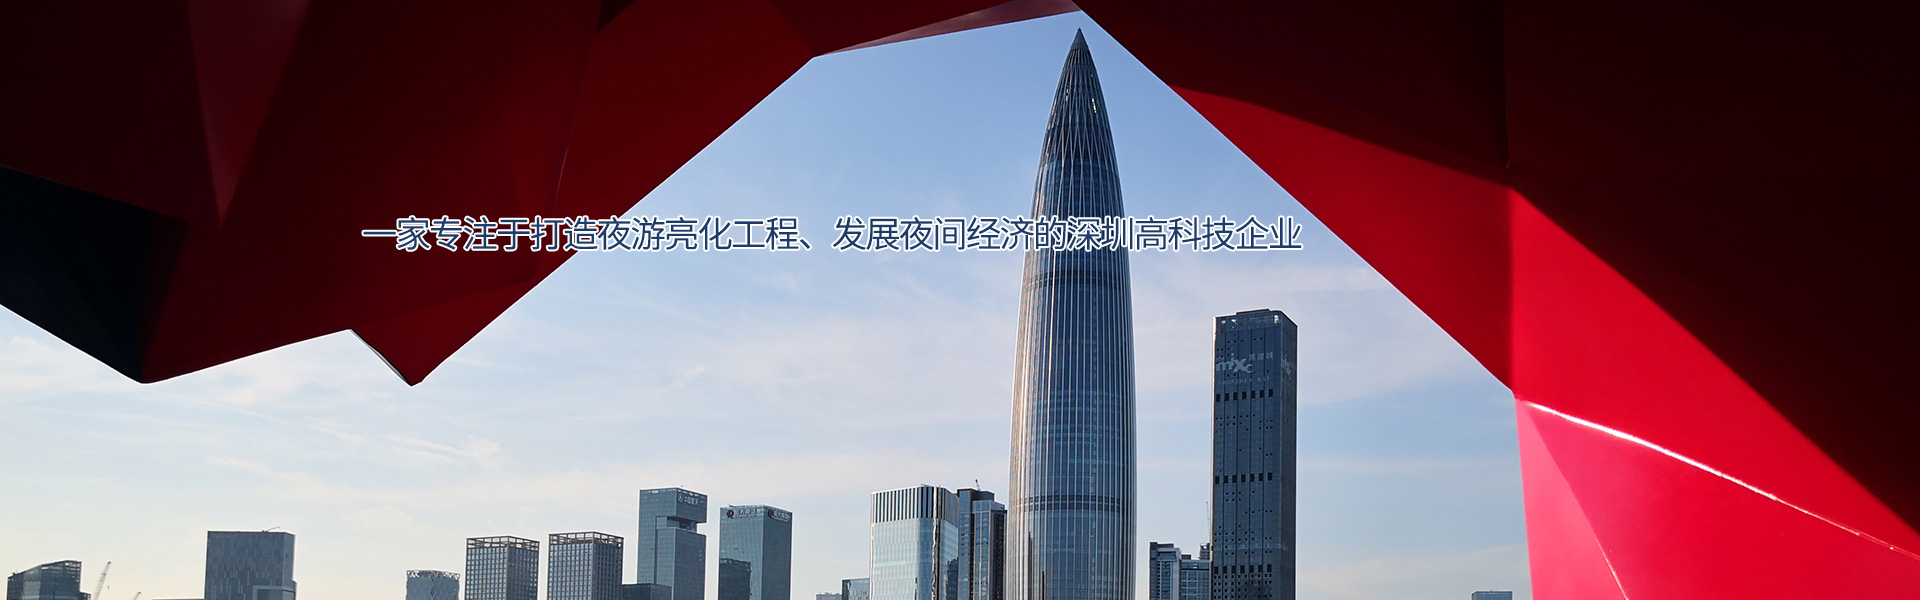 思迪恩--一家專注于打造夜游亮化工程，發展夜間經濟的深圳高科技企業